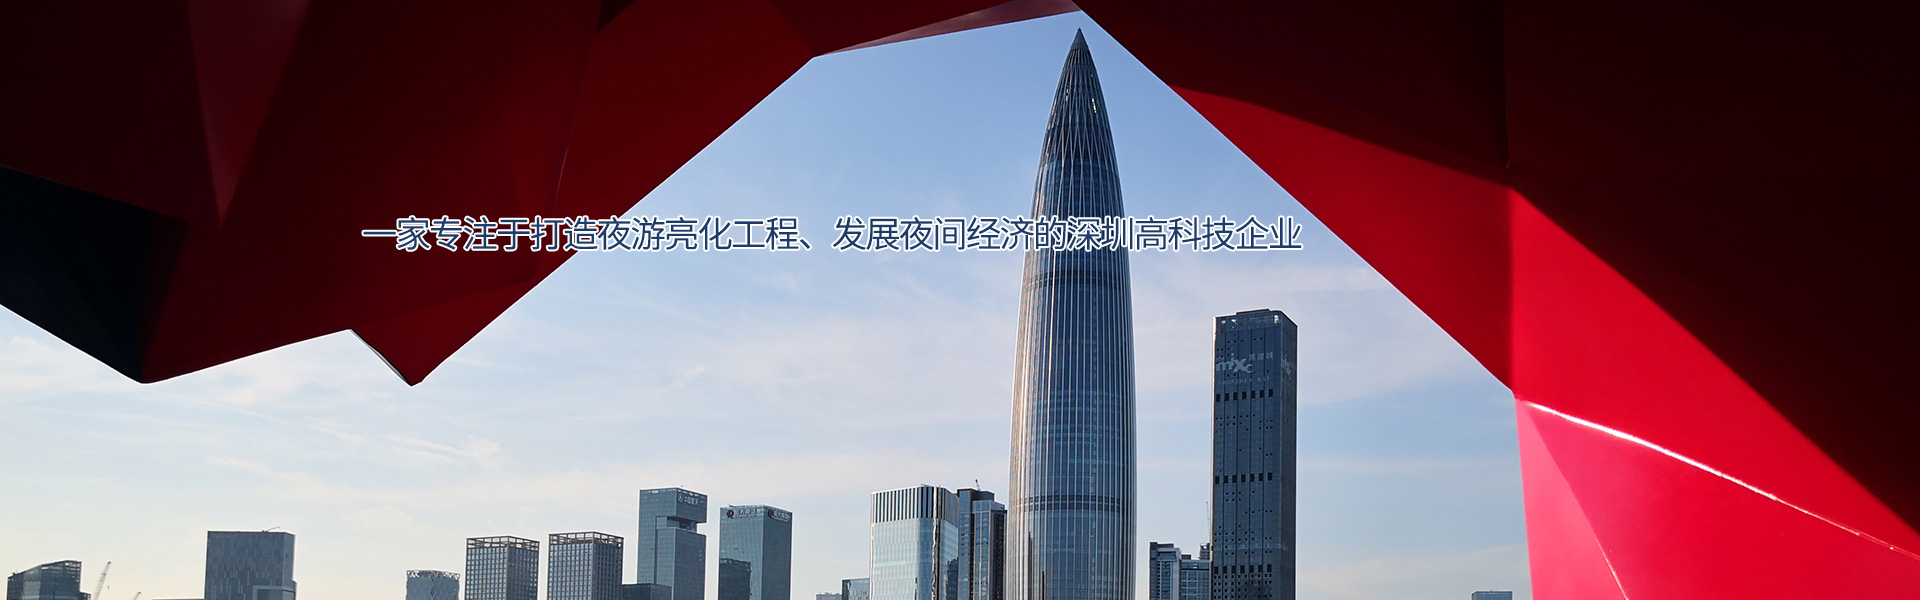 思迪恩--一家專注于打造夜游亮化工程，發展夜間經濟的深圳高科技企業